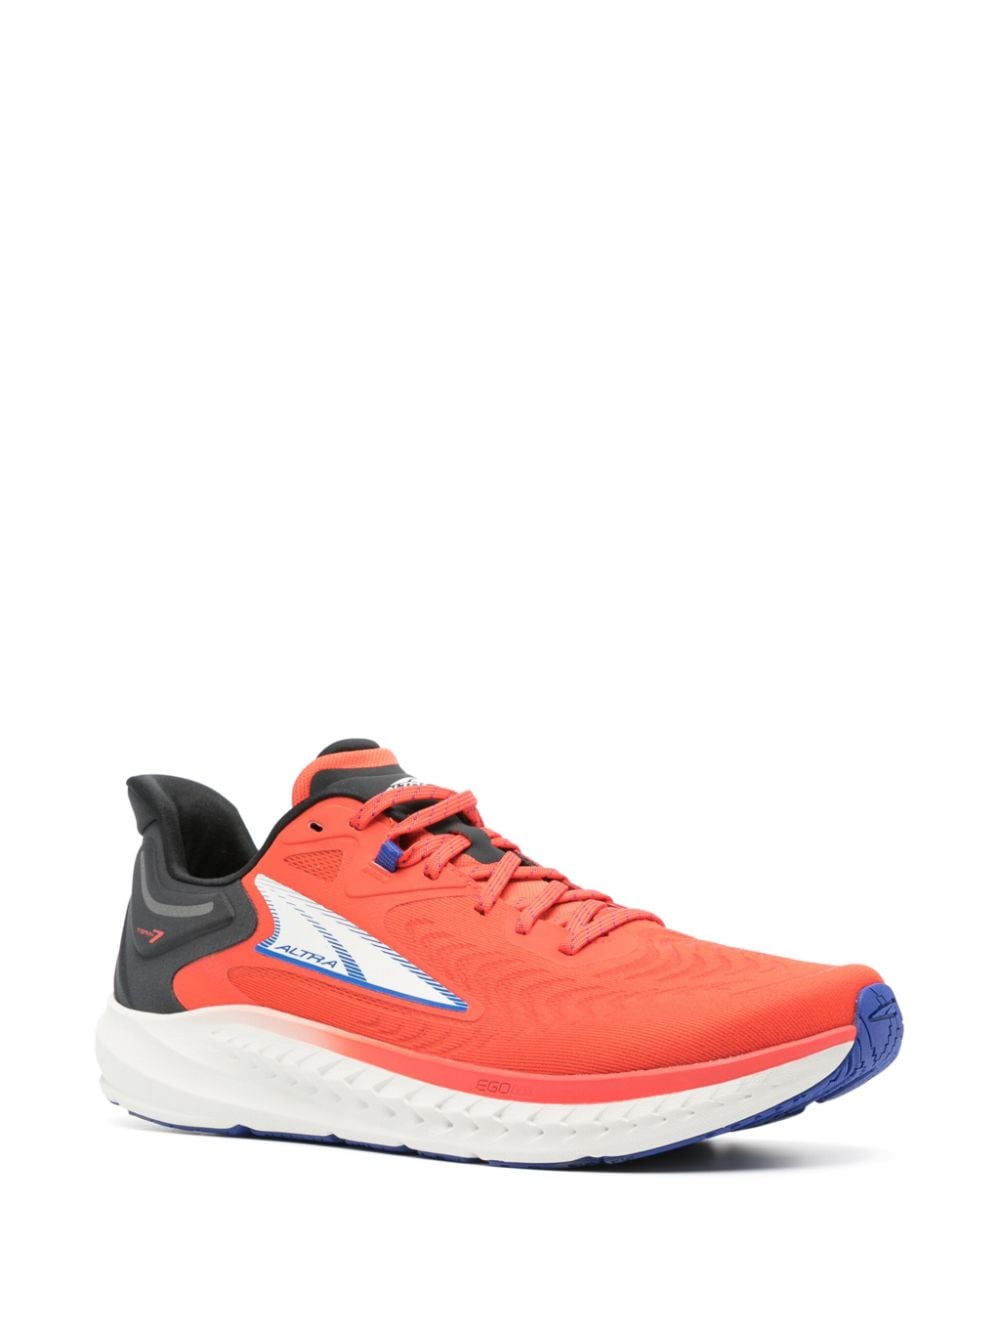 Sneakers Torin 7 nere/blu/arancioni